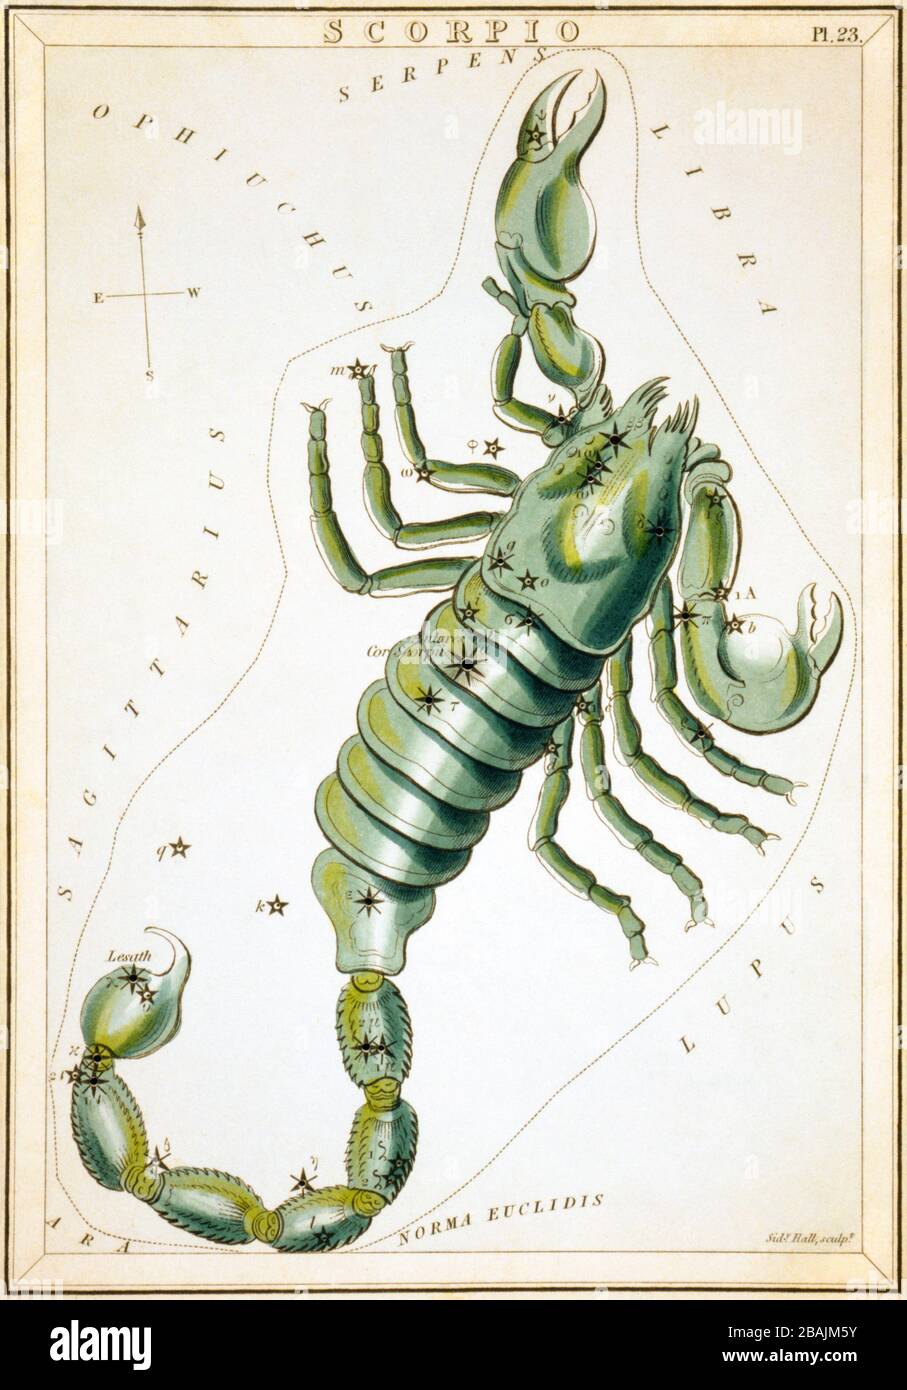 Scorpion, carte céleste, partie du miroir Urania, vue des cieux, gravé par la salle Sidney, publié pour la première fois en 1824 Banque D'Images